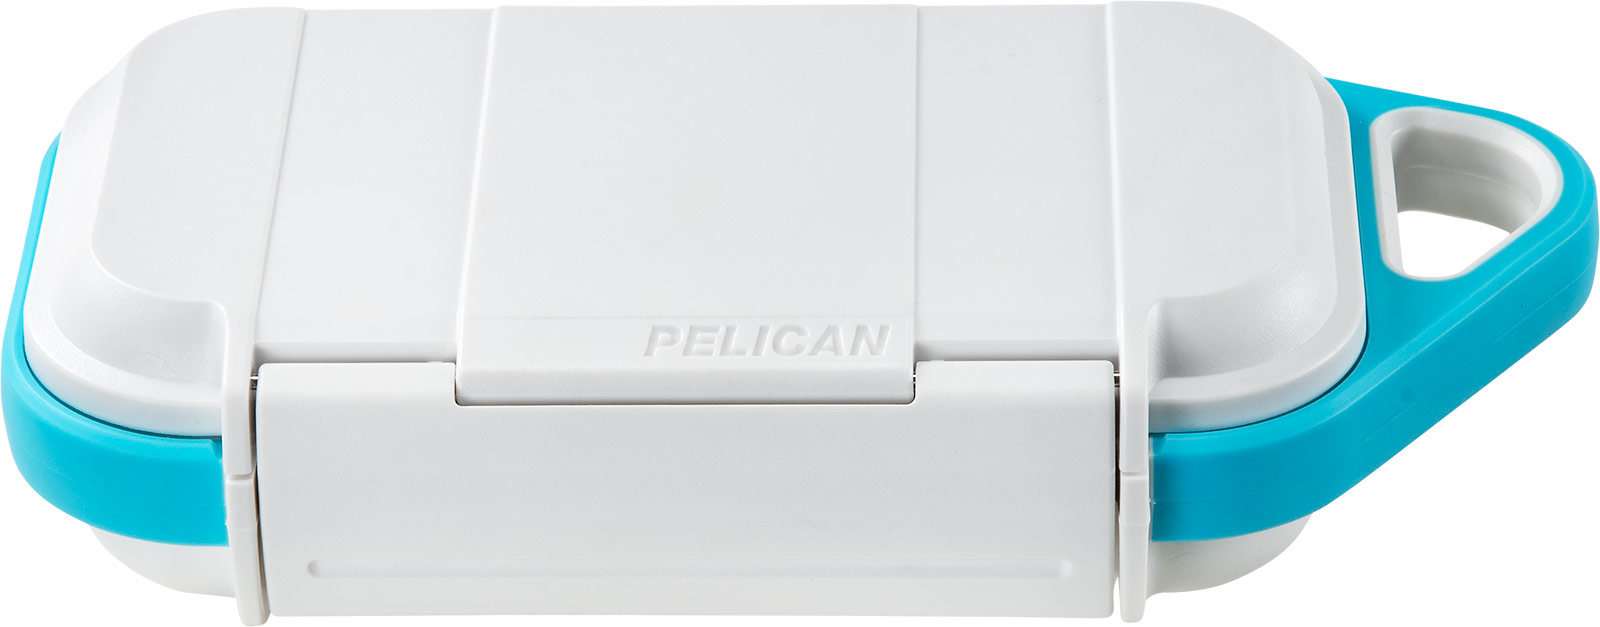 pelican white protective small go case g40